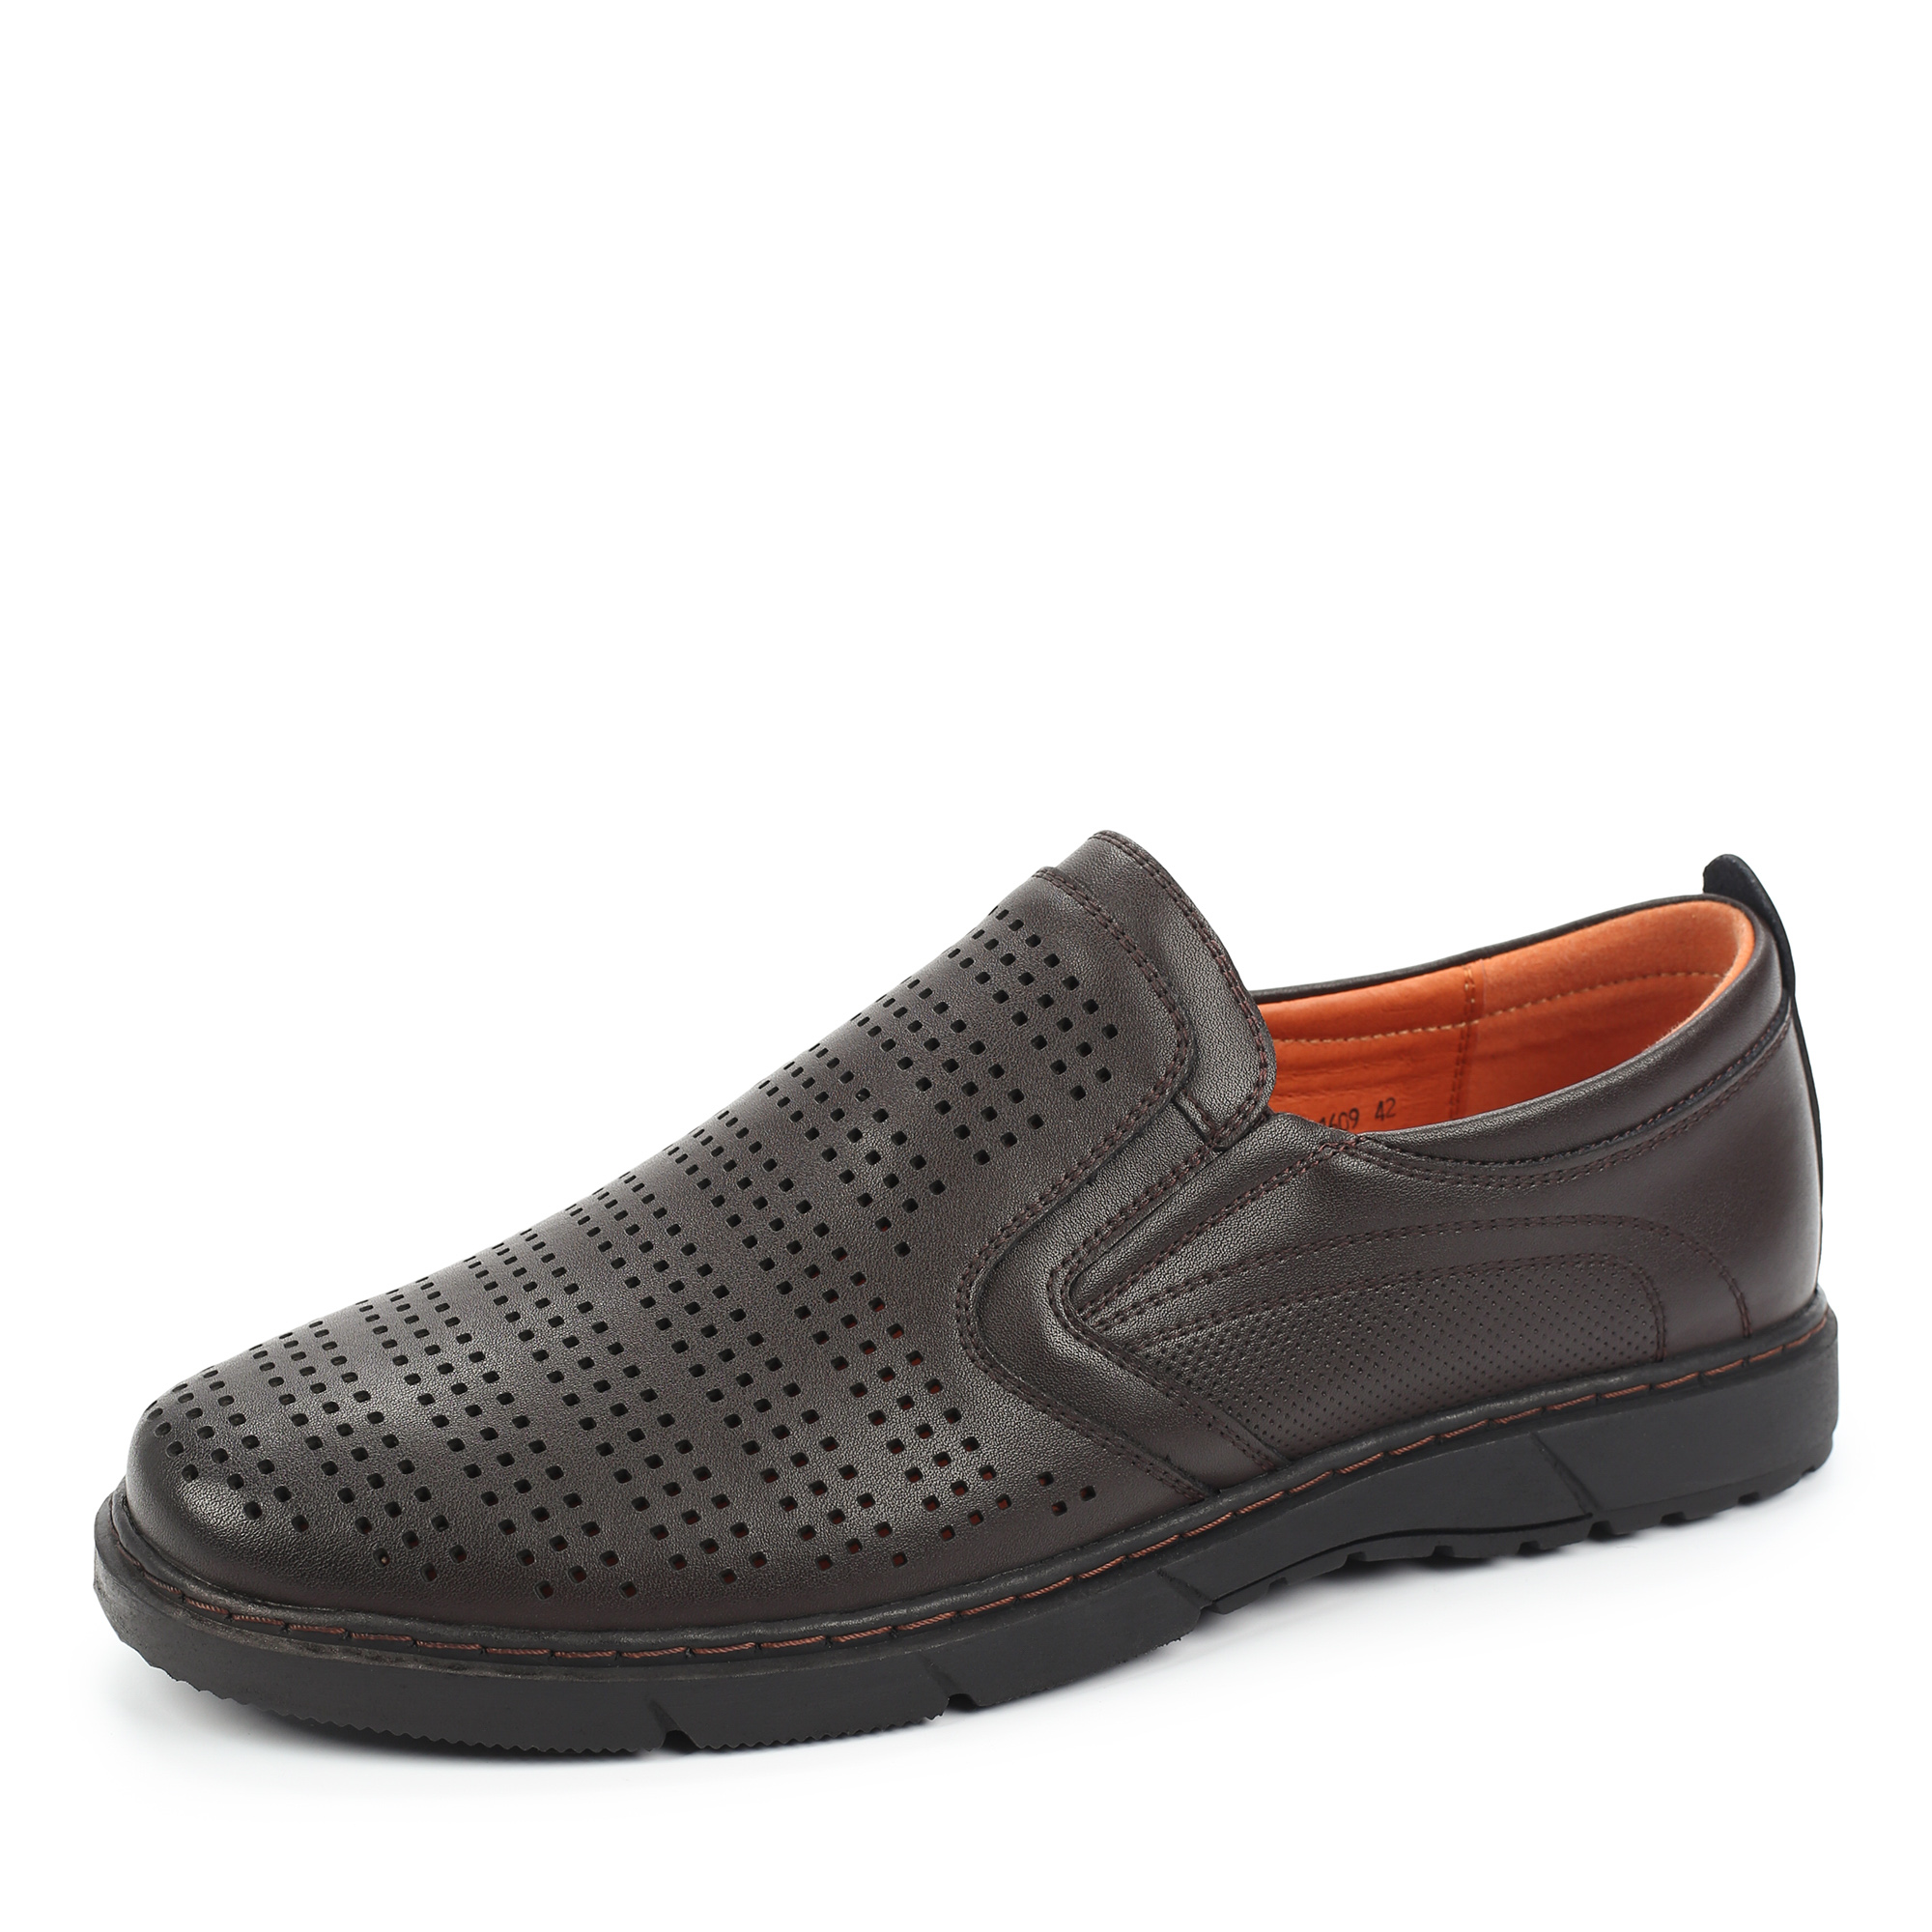 Туфли/полуботинки MUNZ Shoes 104-612A-1609, цвет темно-коричневый, размер 40 - фото 2